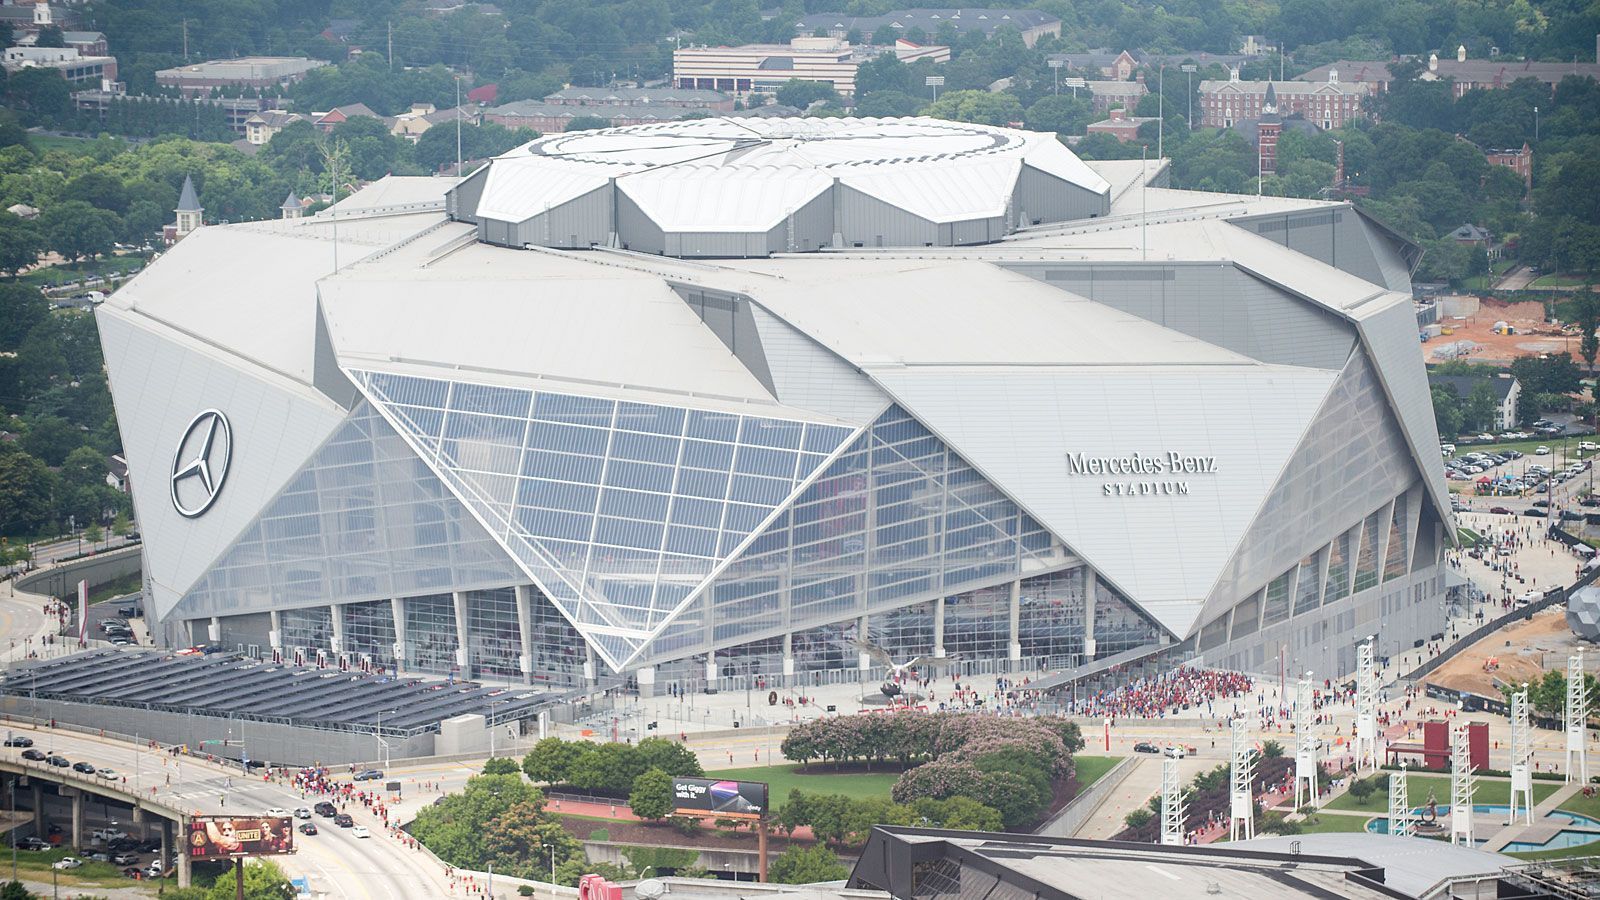 
                <strong>Premiere im Mercedes Benz-Stadium</strong><br>
                In dem im Jahr 2017 eröffneten, futuristischen Stadion wird erstmals ein Super Bowl ausgetragen. In Atlanta wurden allerdings im Georgia Dome schon zweimal Super Bowls gespielt, zuletzt im Jahr 2000.
              